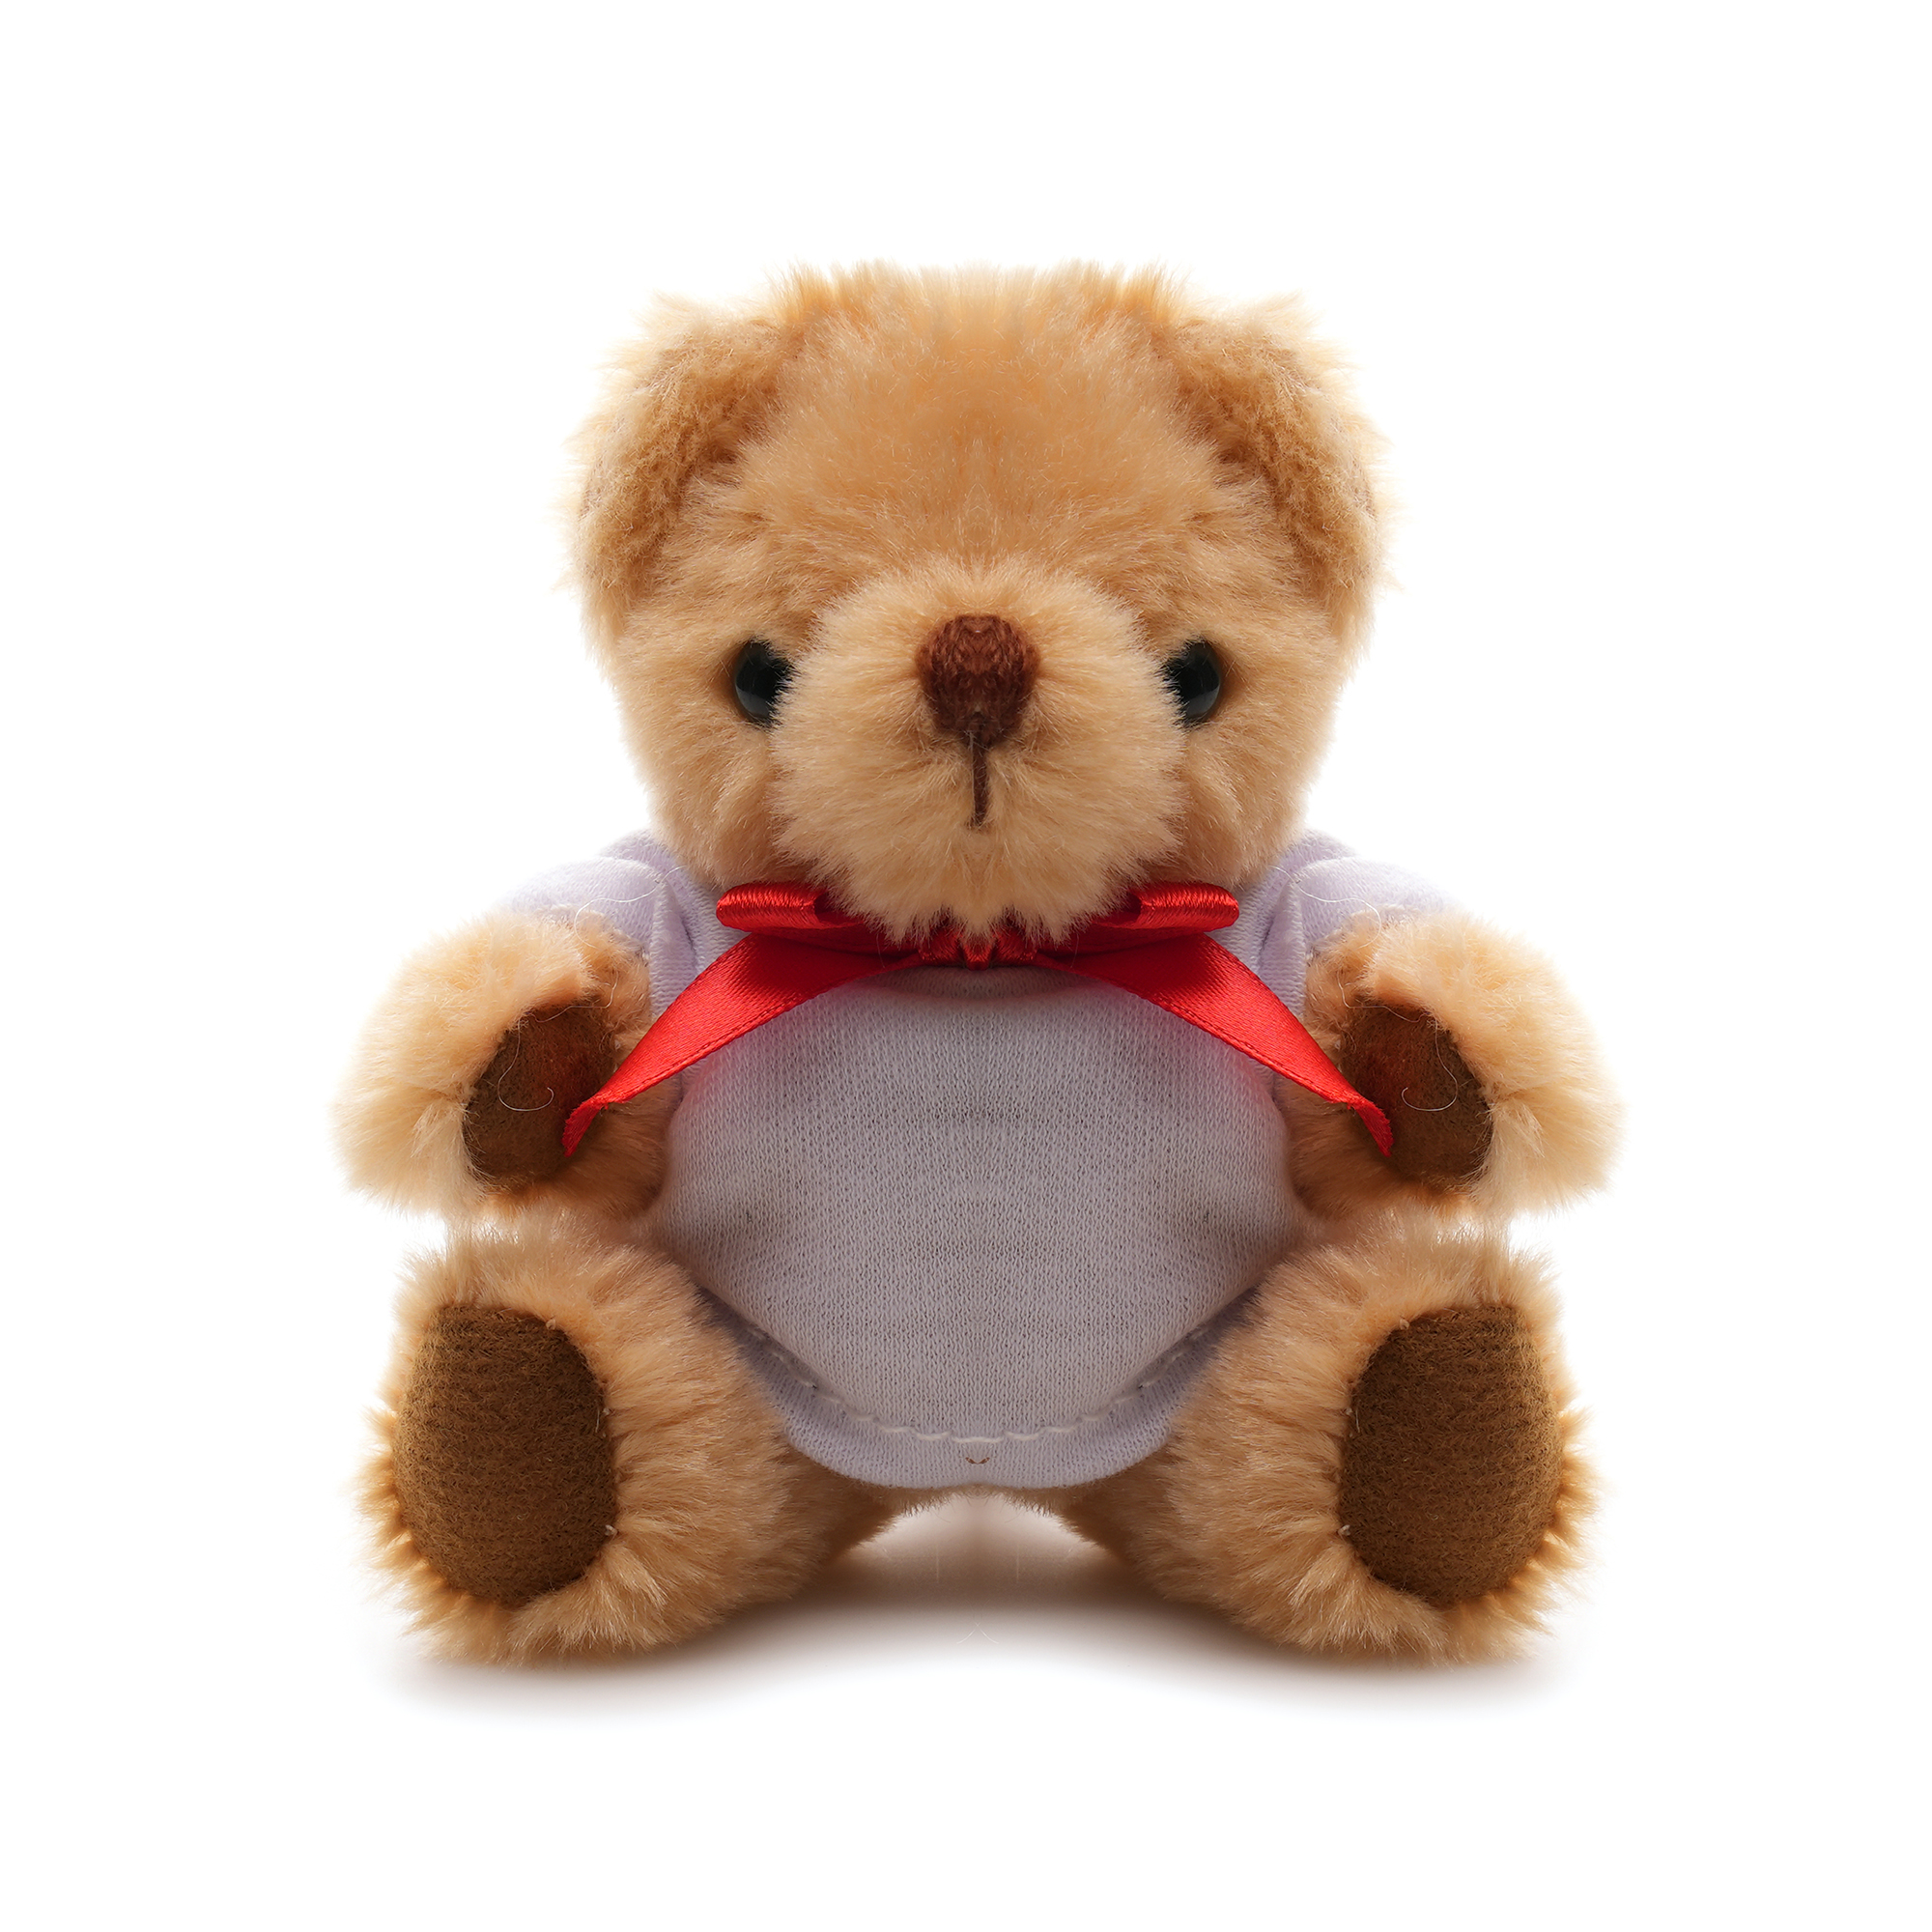 TB0004 2 - Fuzzy 20cm Teddy Bear